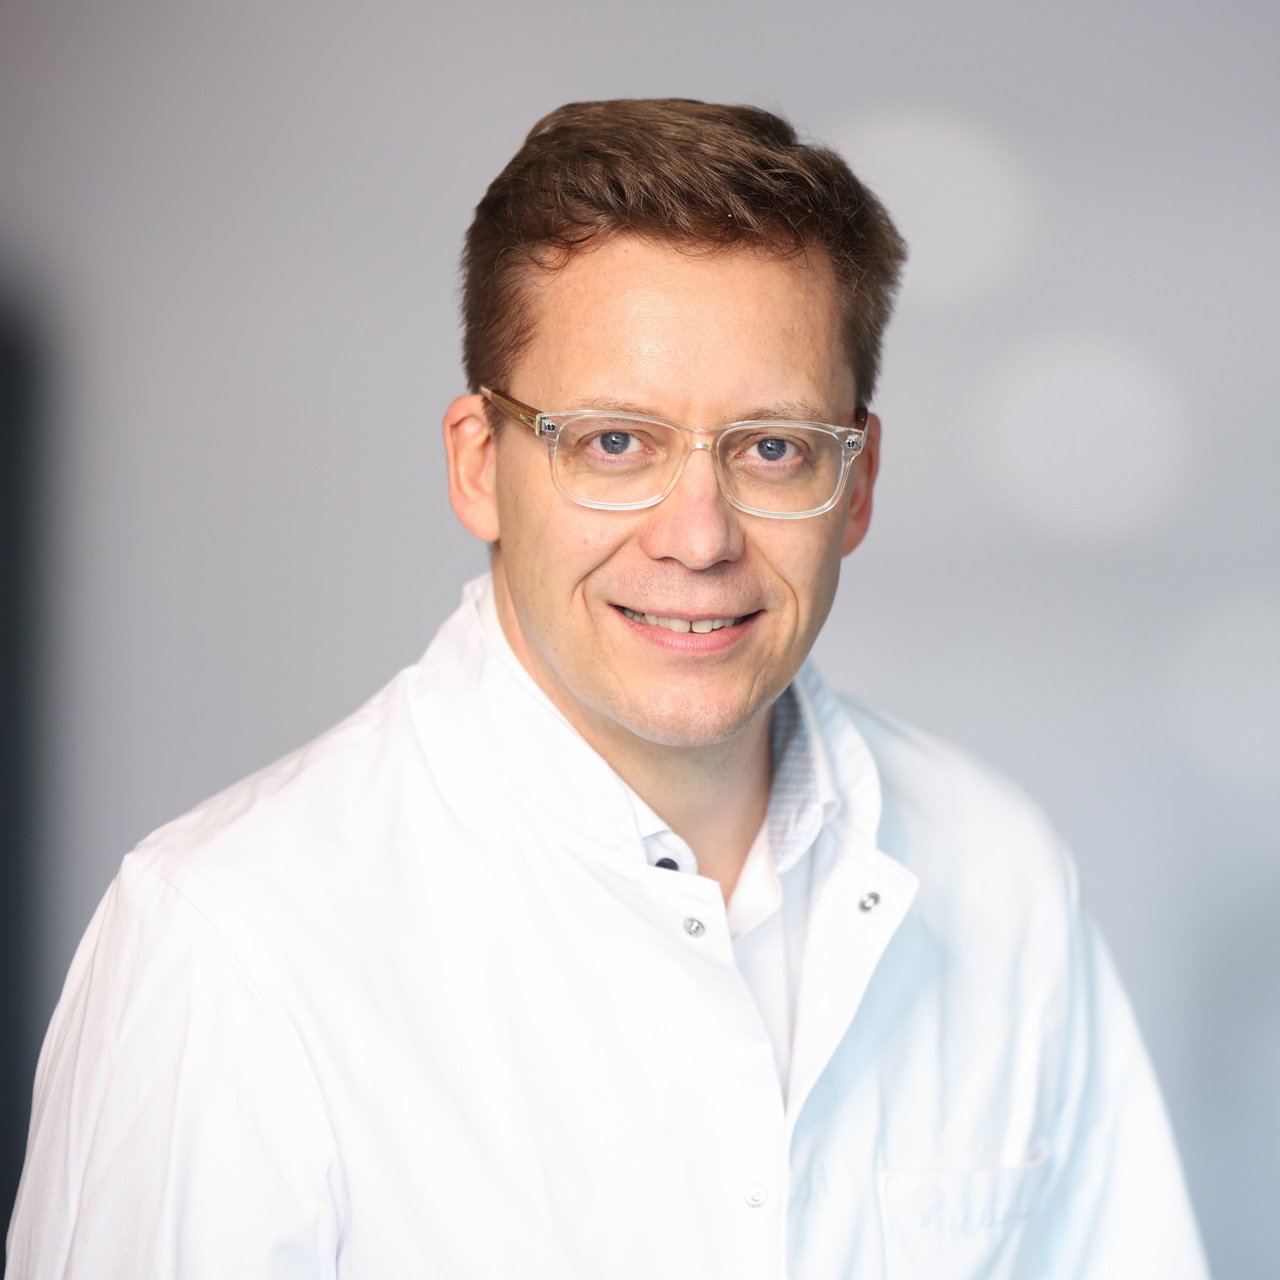 Portraitbild von Prof. Dr. Christian Schumann, Facharzt für Innere Medizin, Klinikum Kempten